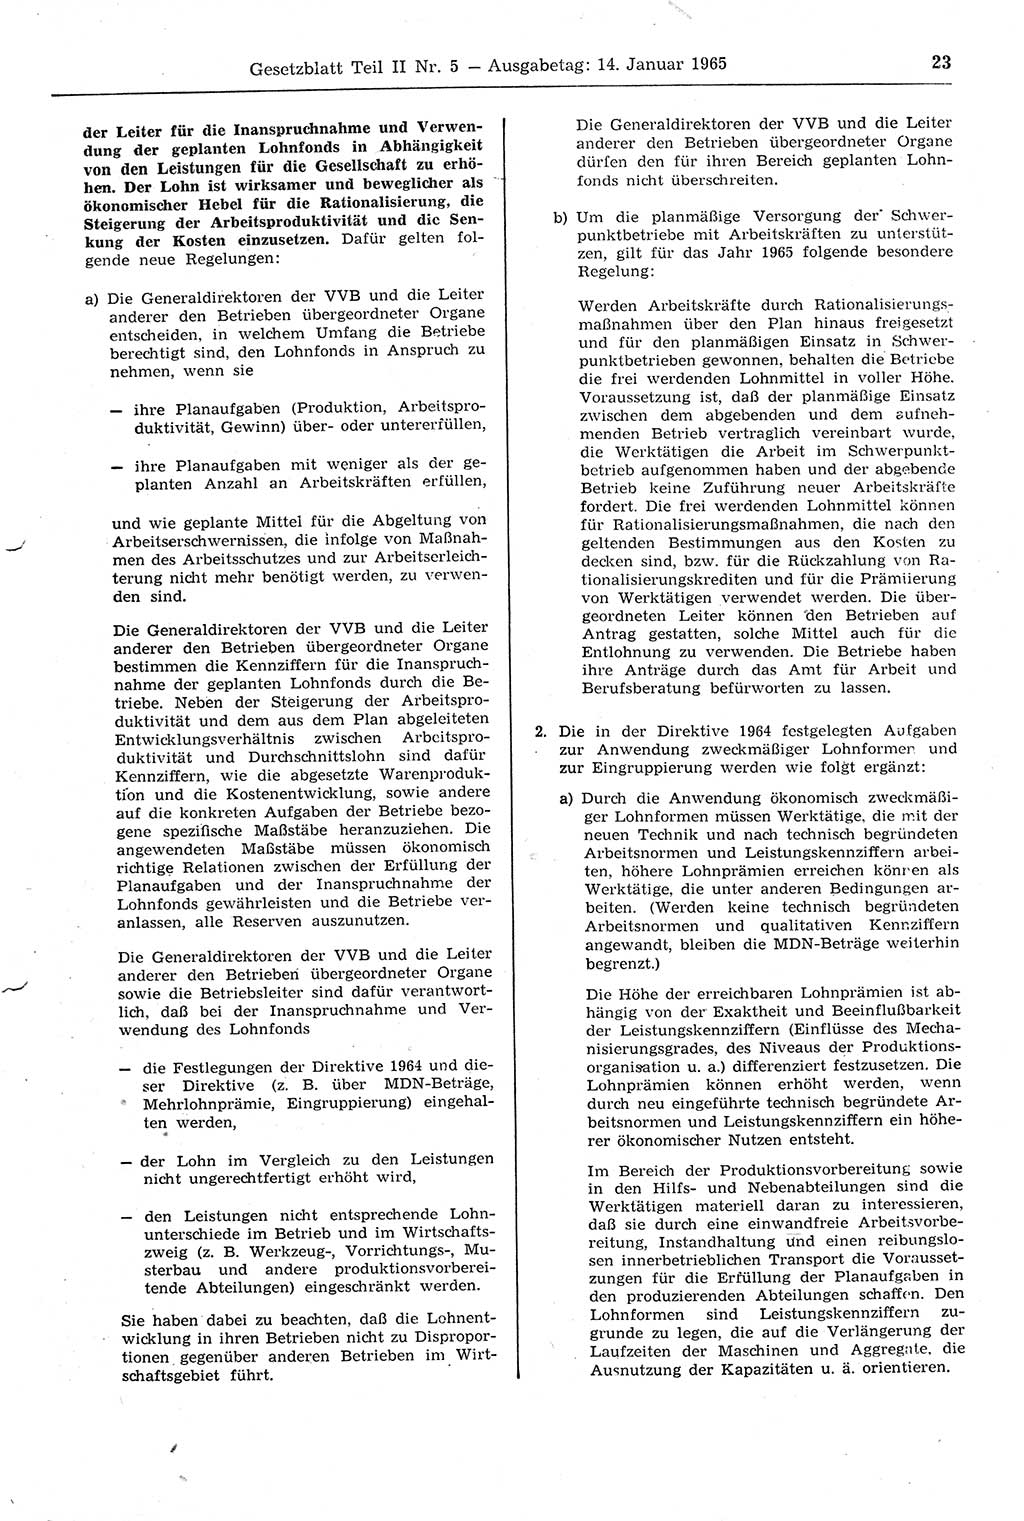 Gesetzblatt (GBl.) der Deutschen Demokratischen Republik (DDR) Teil ⅠⅠ 1965, Seite 23 (GBl. DDR ⅠⅠ 1965, S. 23)